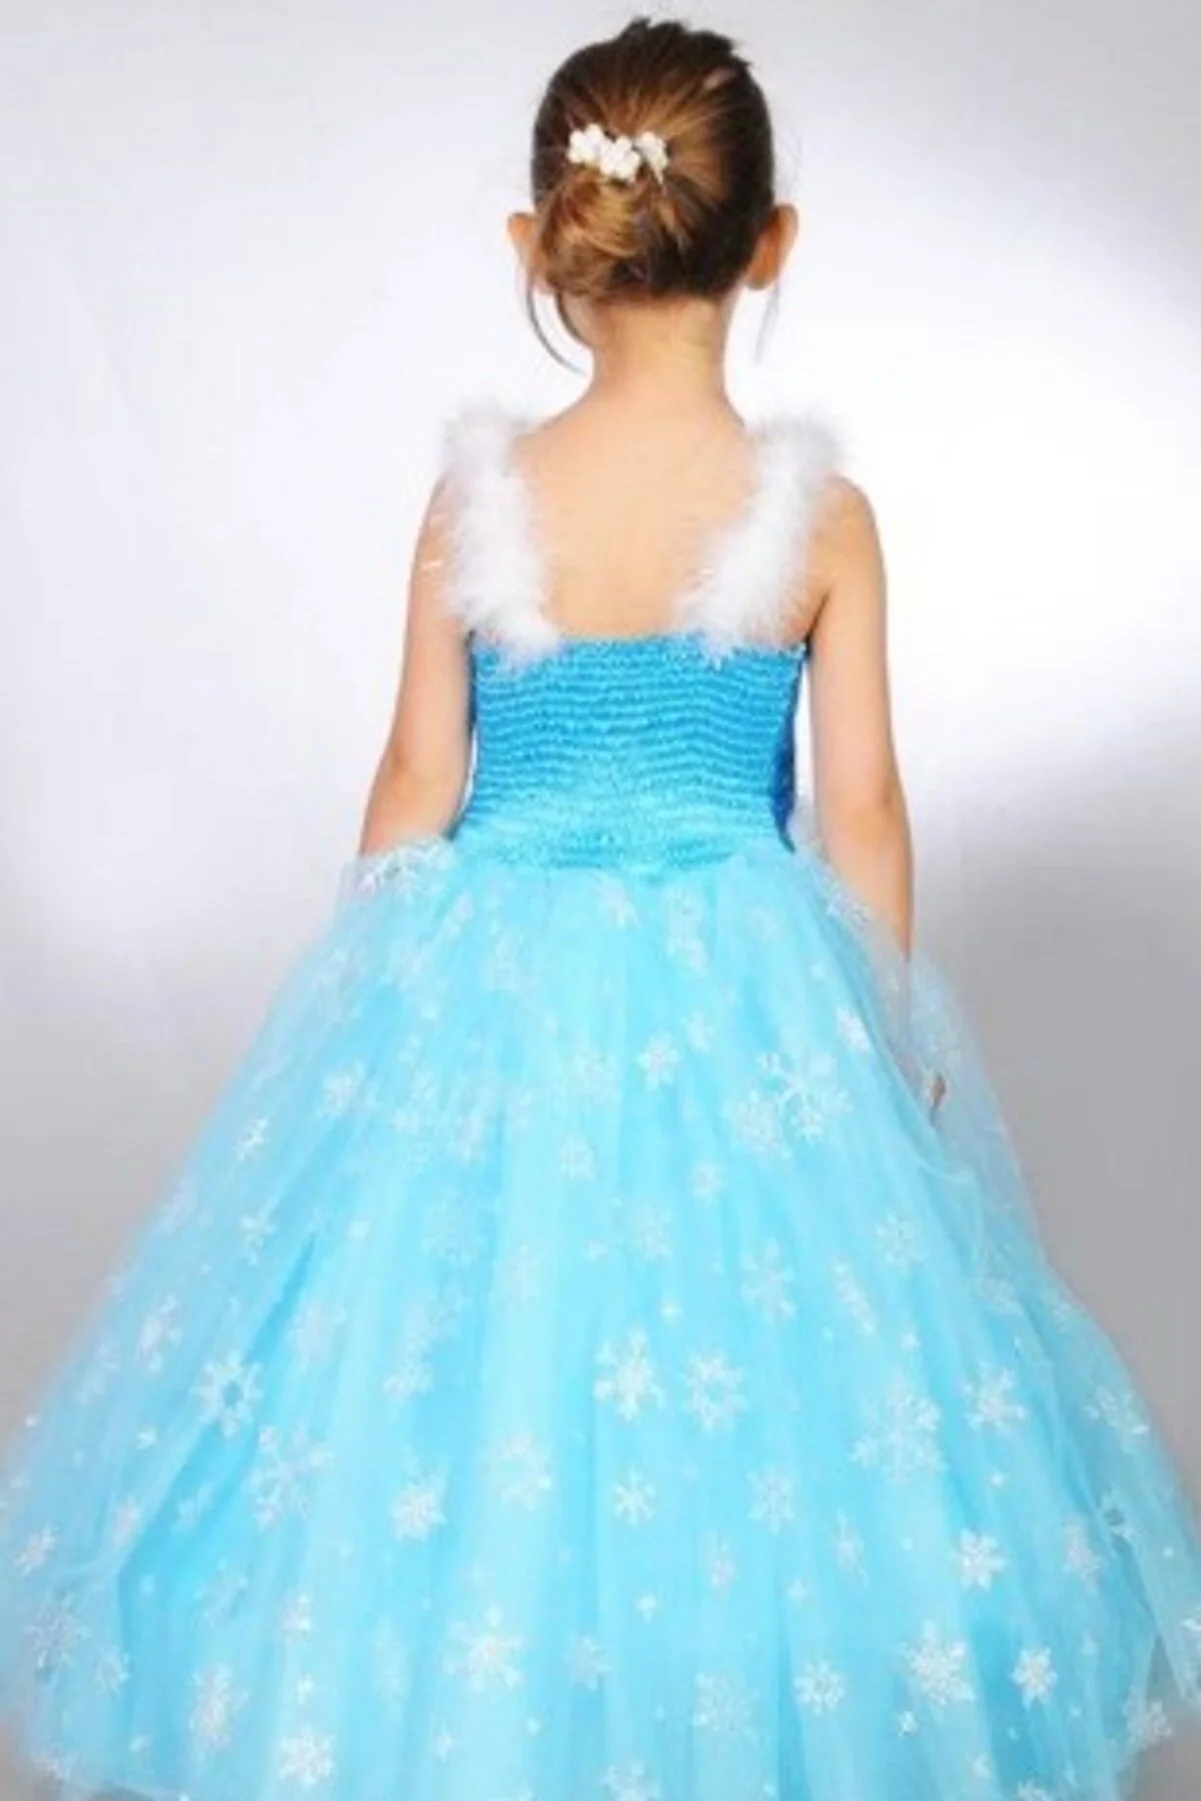 Karlar Ülkesi Elsa Frozen Kostümü + Tacı + Asası + Saçı Full Set 9-11 Yaş (CLZ)